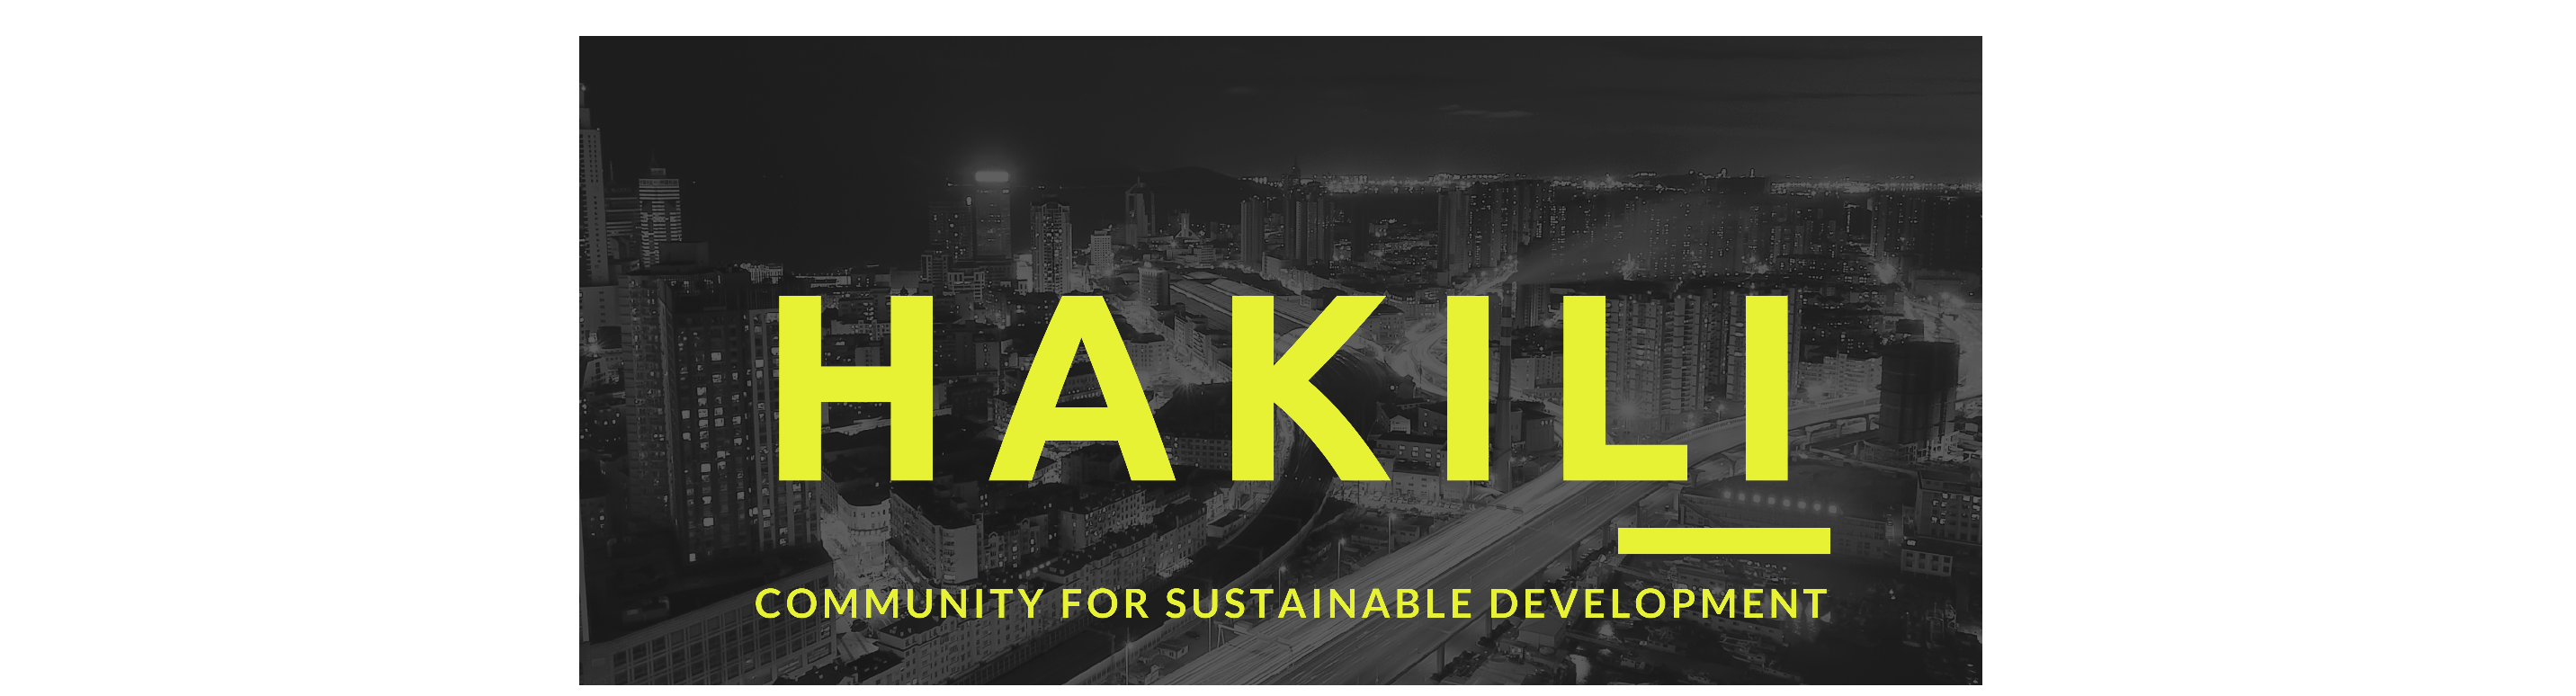 Hakili Community for Sustainable Development Logo